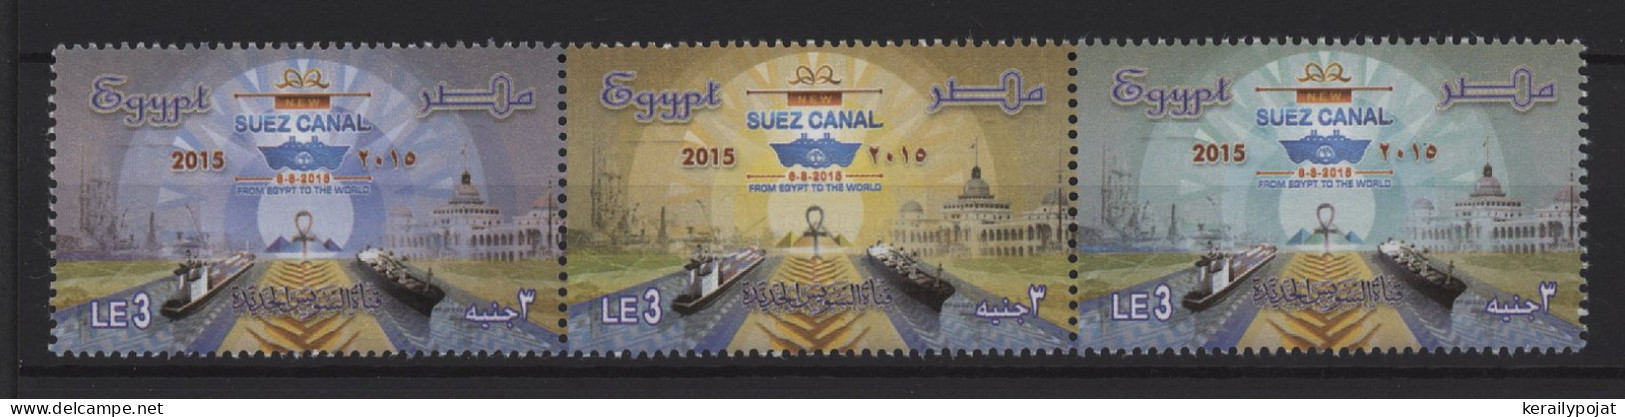 Egypt - 2015 New Suez Canal Strip MNH__(TH-26046) - Ongebruikt